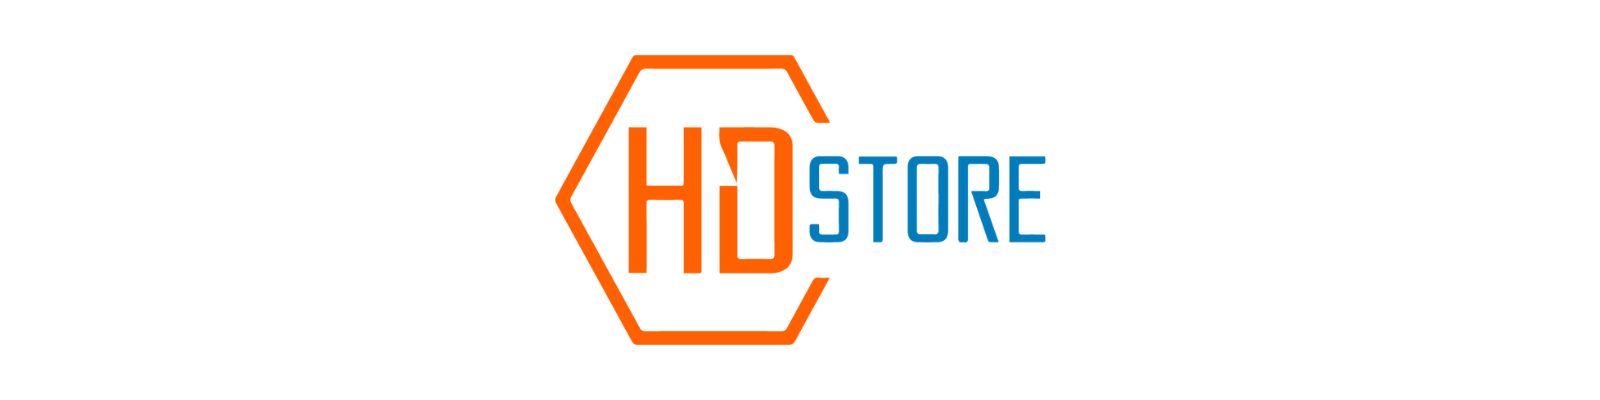 HD Store é confiável? Não compre antes de saber a Verdade!